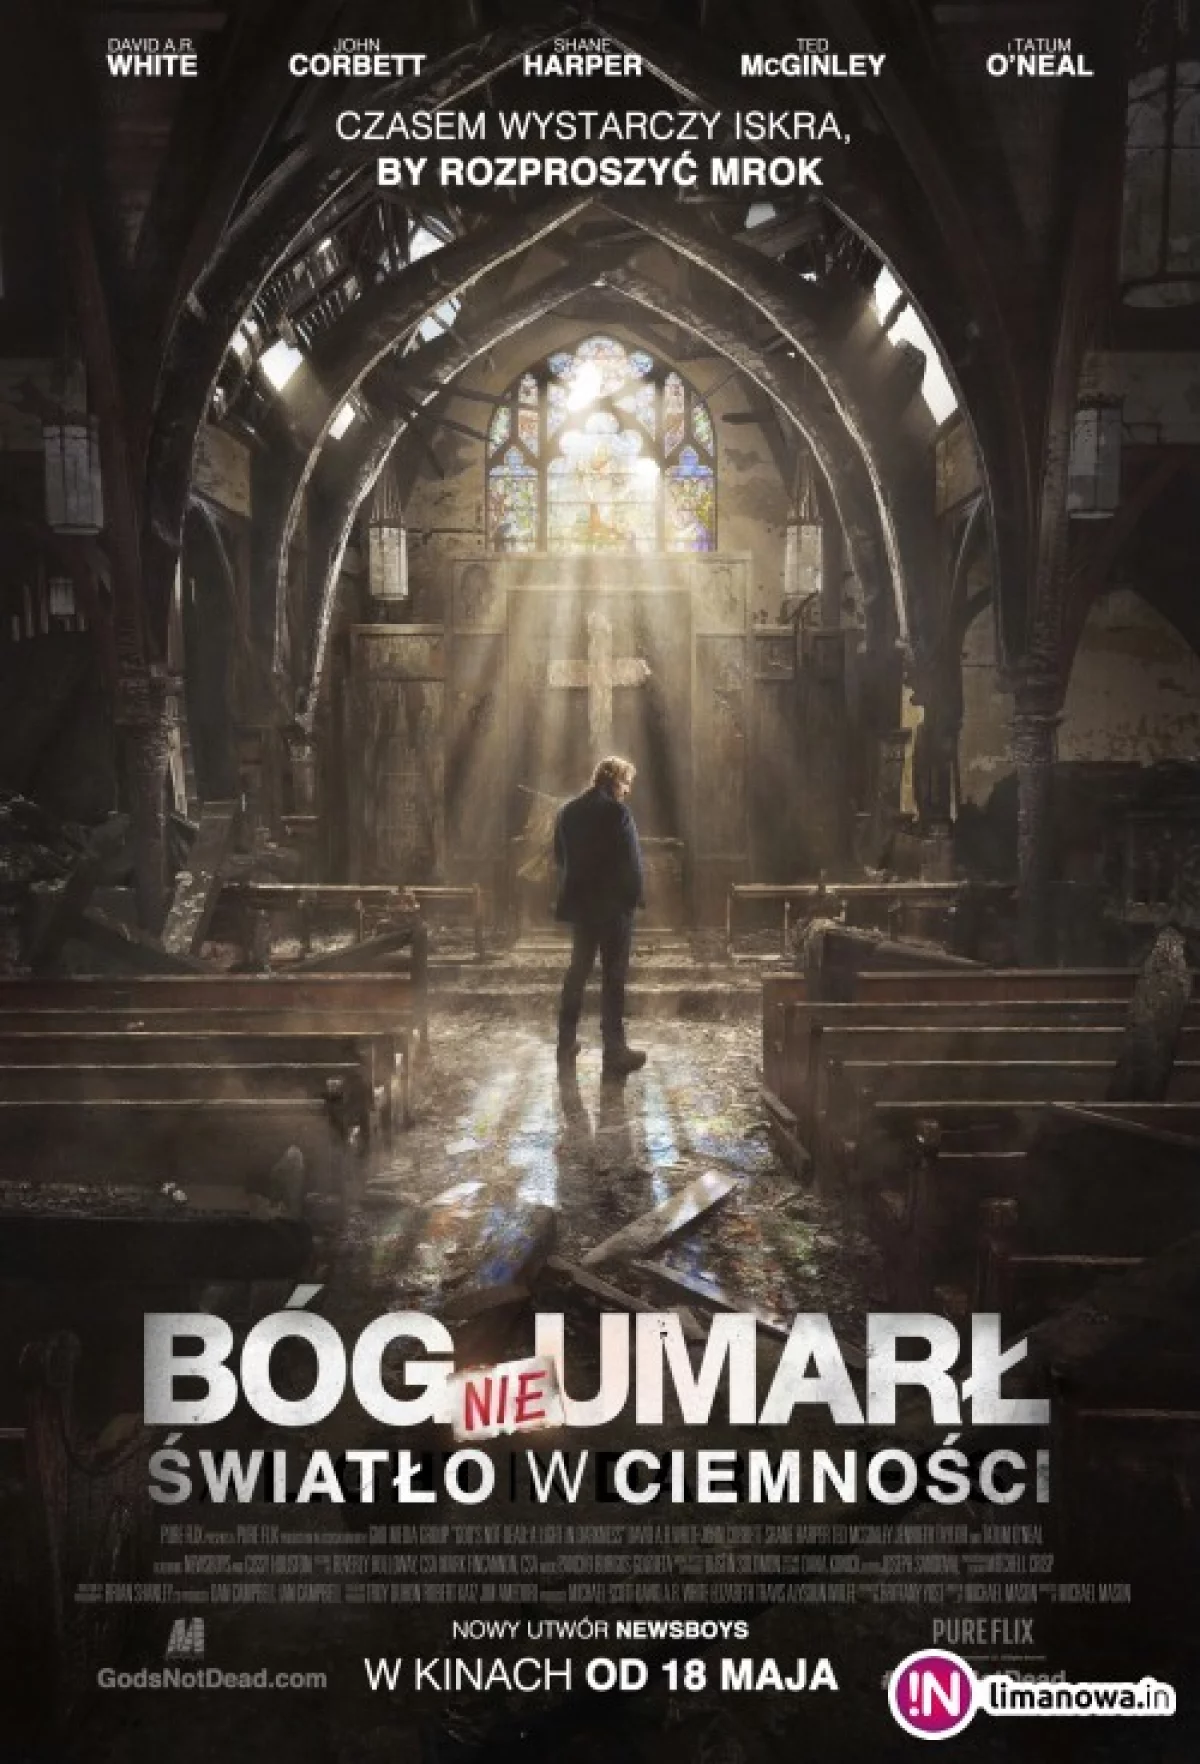 Premiera w kinie Klaps - „Bóg nie umarł: Światło w ciemności” na ekranie od 18 maja